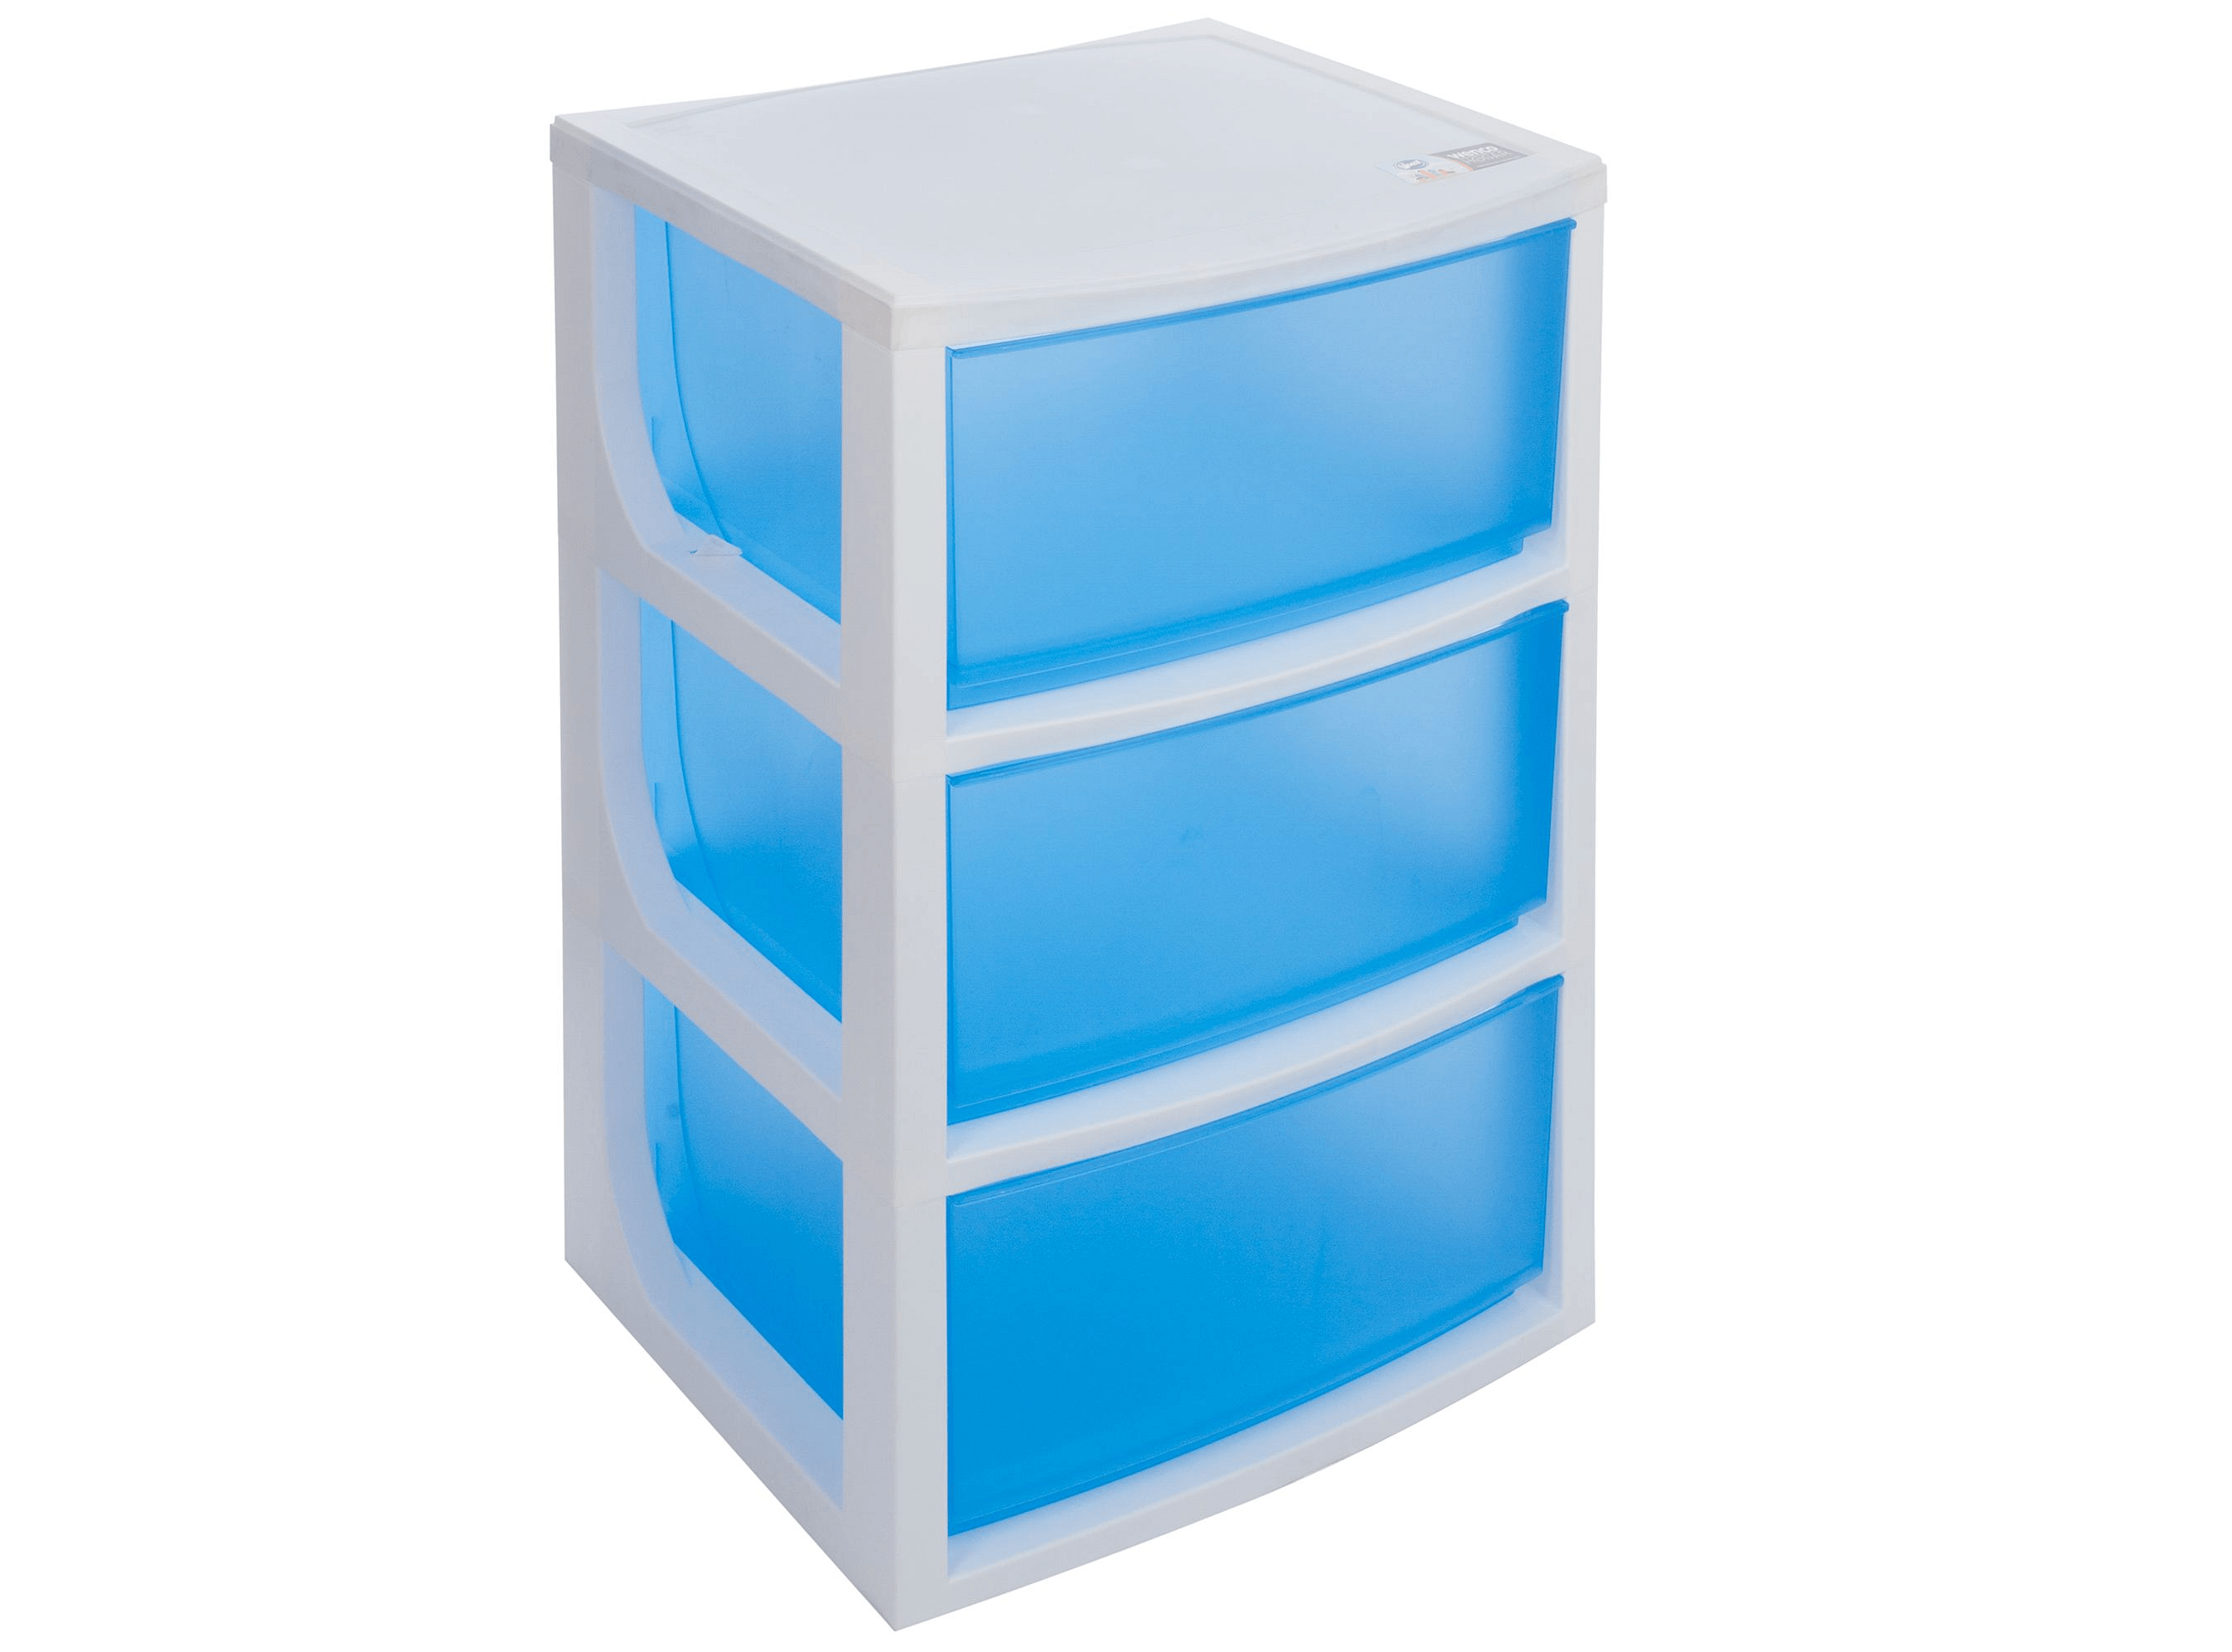 Mueble organizador 3 azul Wenco easy.cl